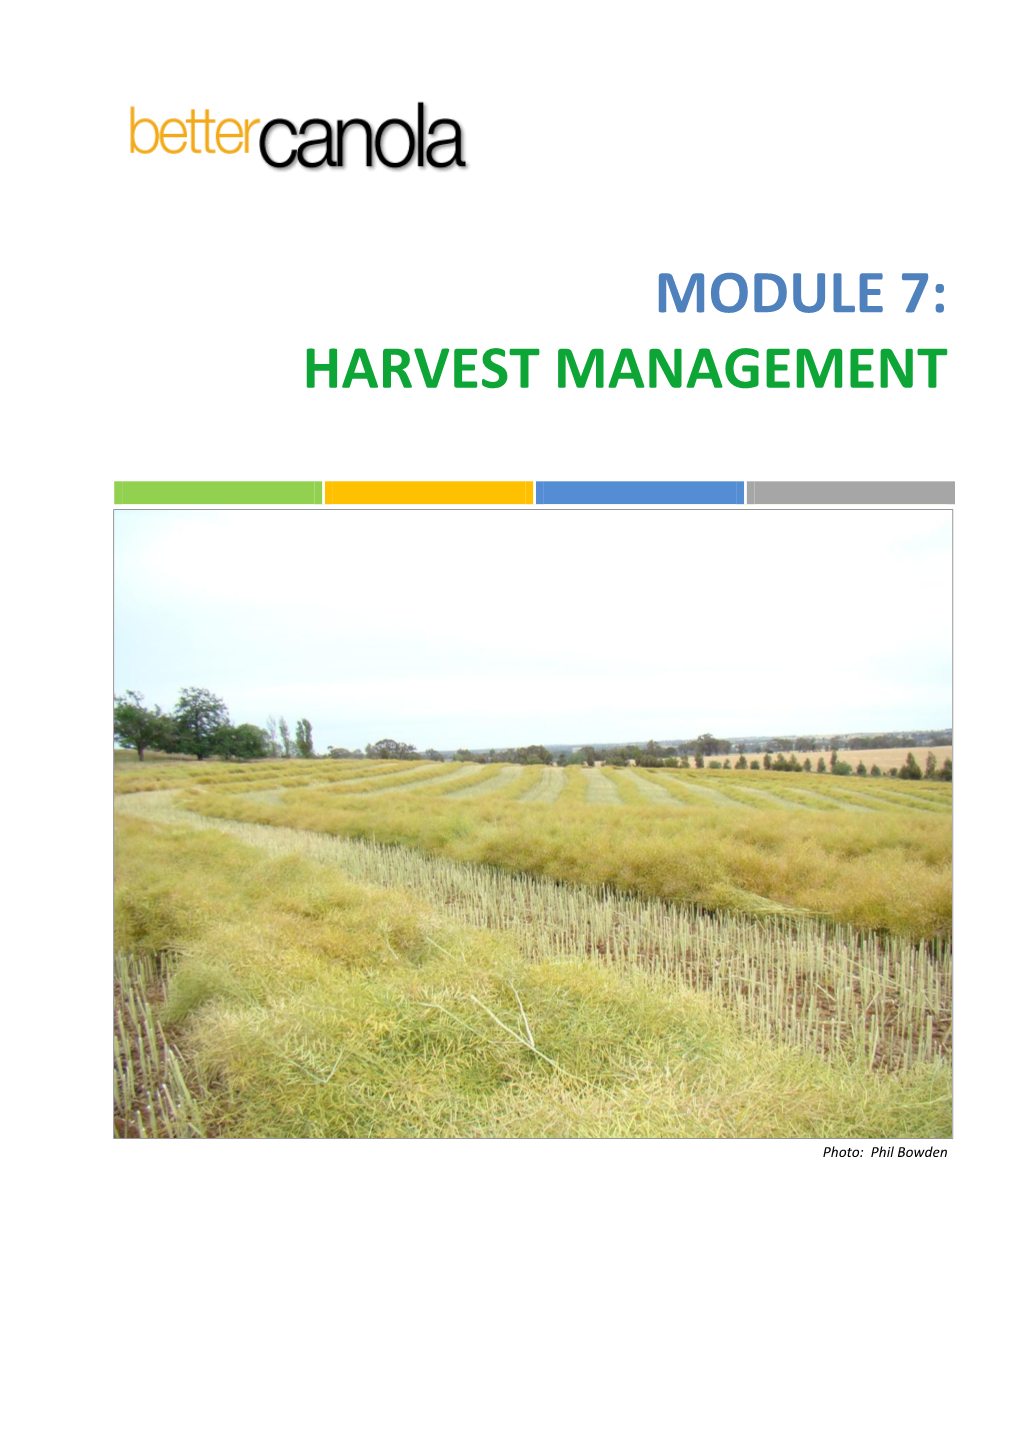 Harvest Management. Module 7